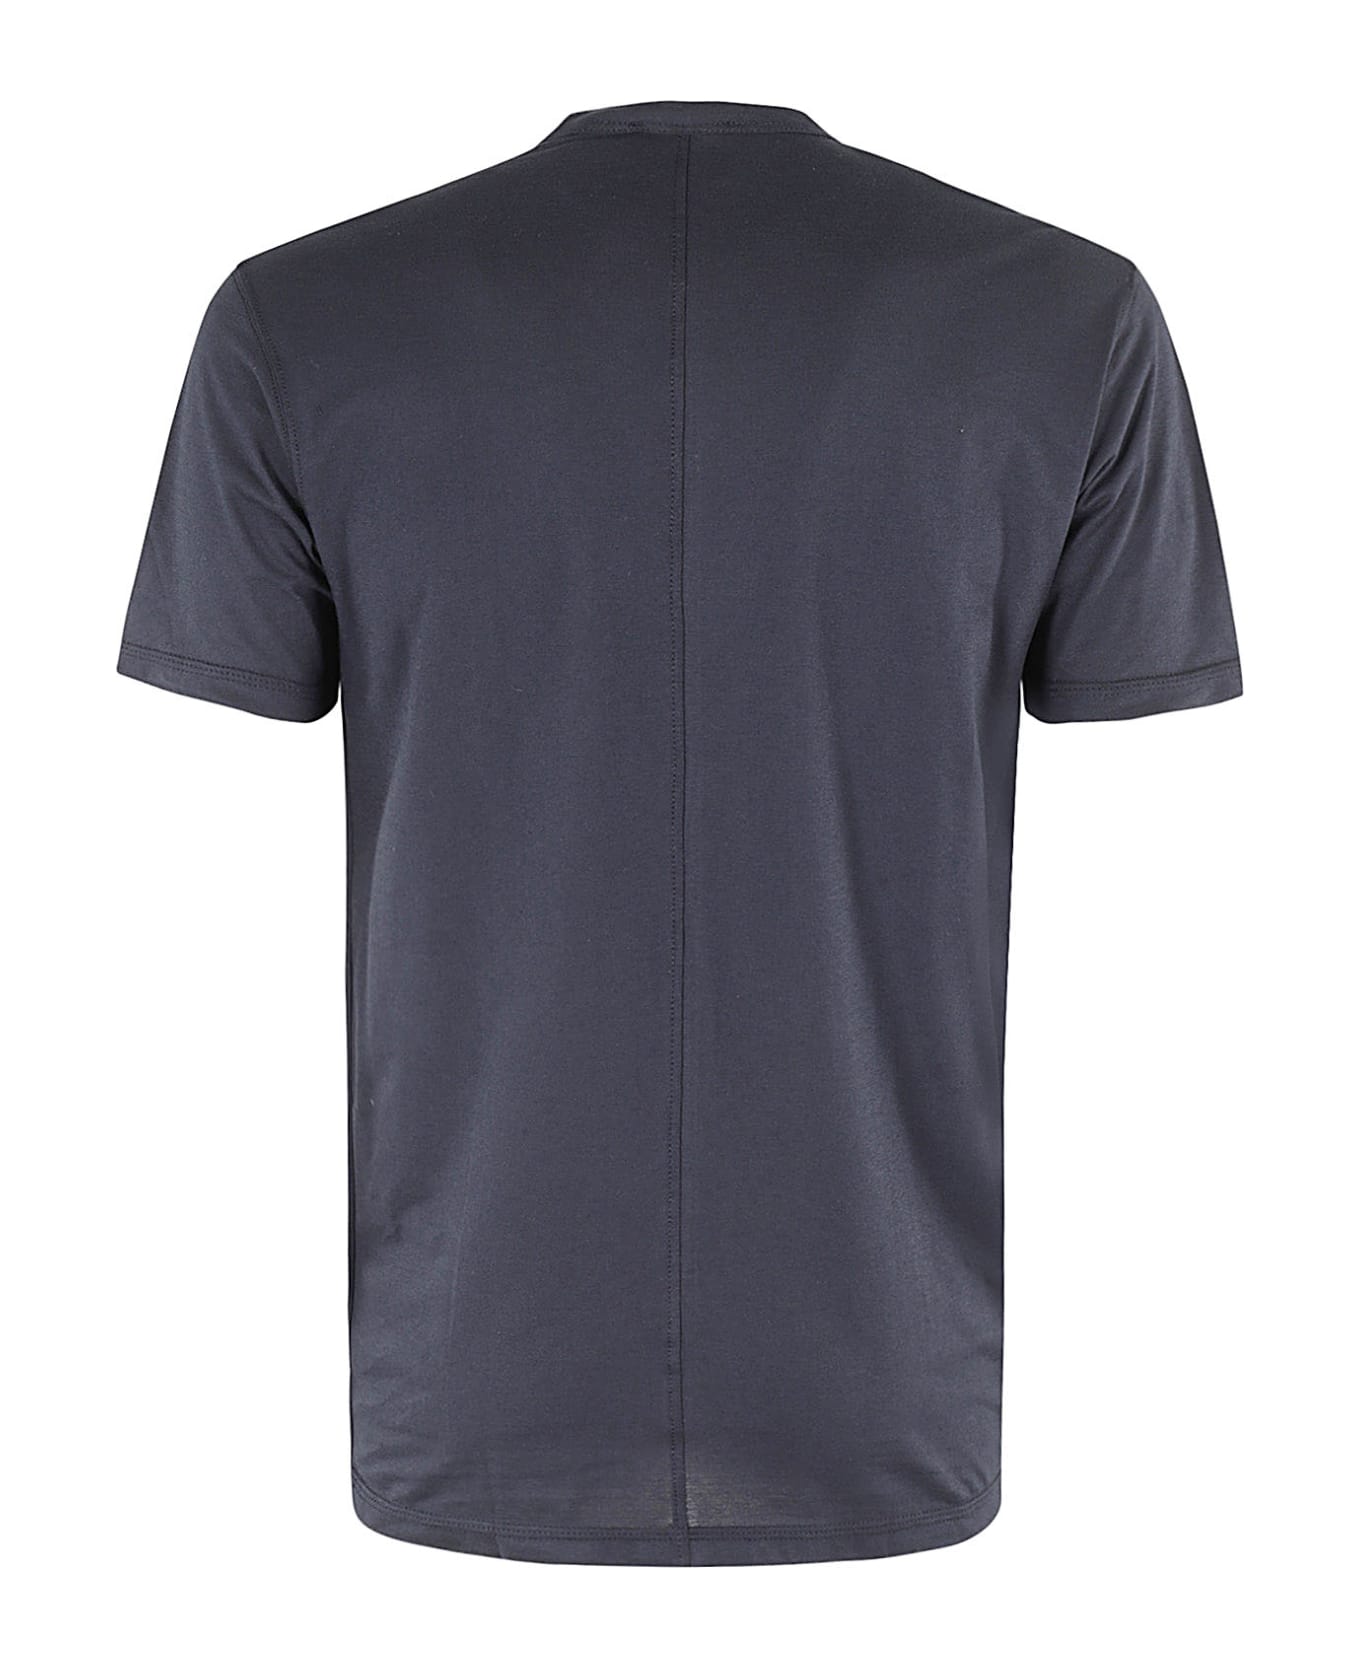 Paolo Pecora T Shirt Jersey - Blu